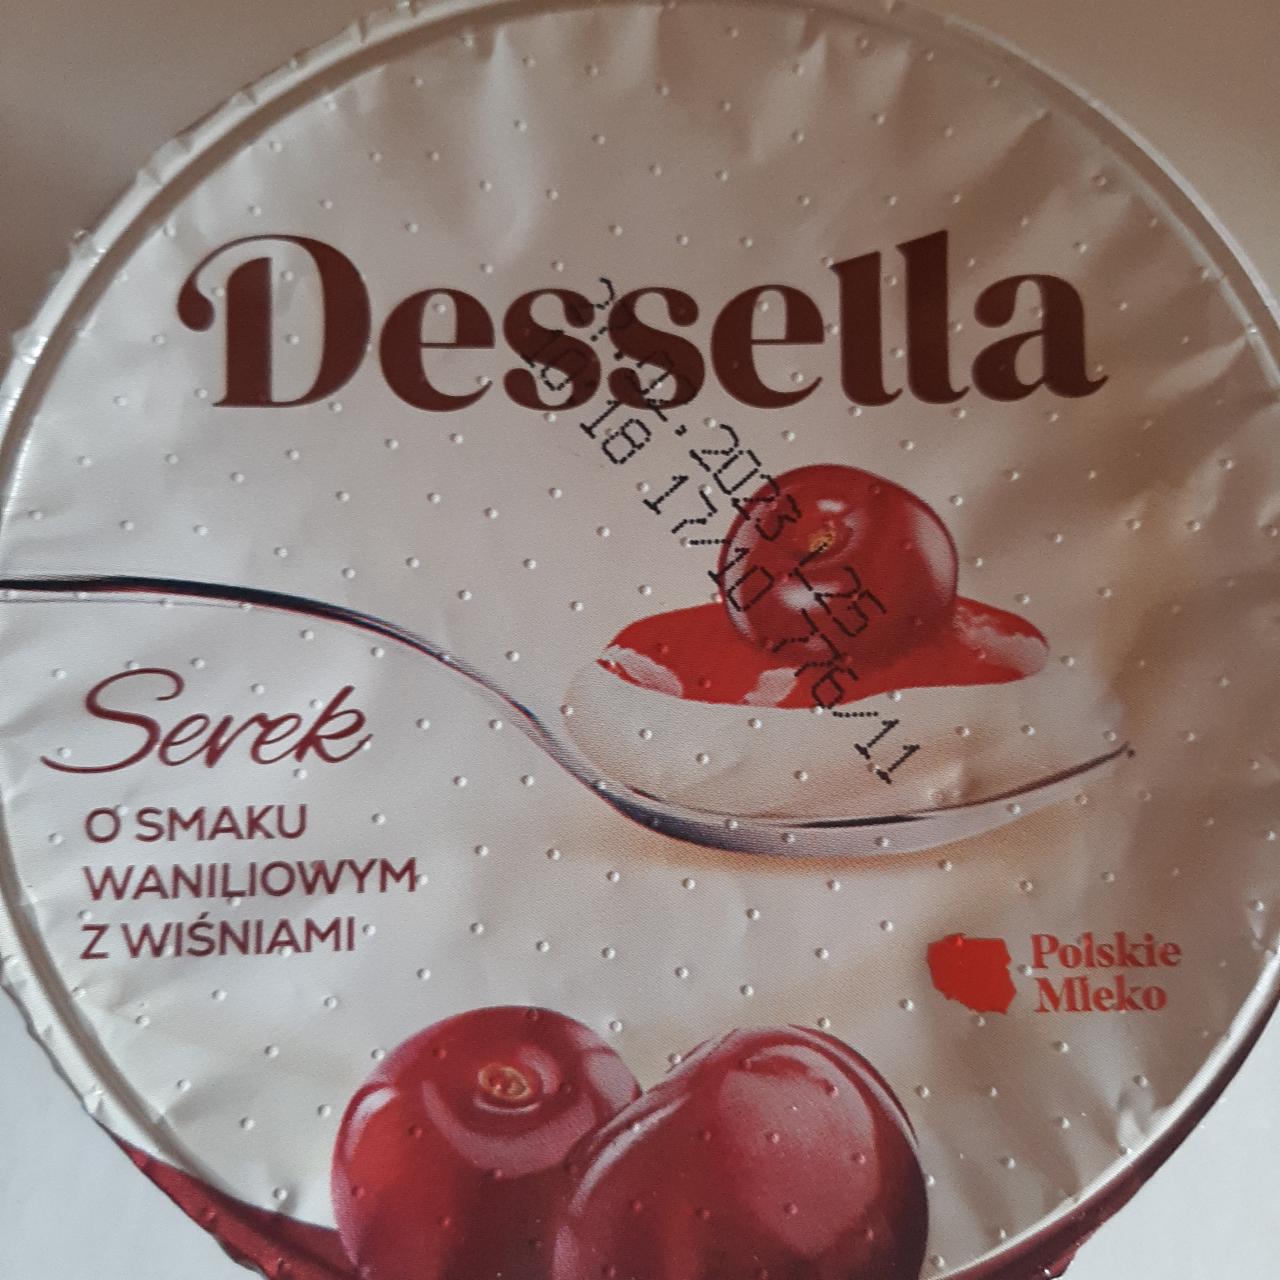 Фото - Сырок ванильный с вишнями Serek Dessella